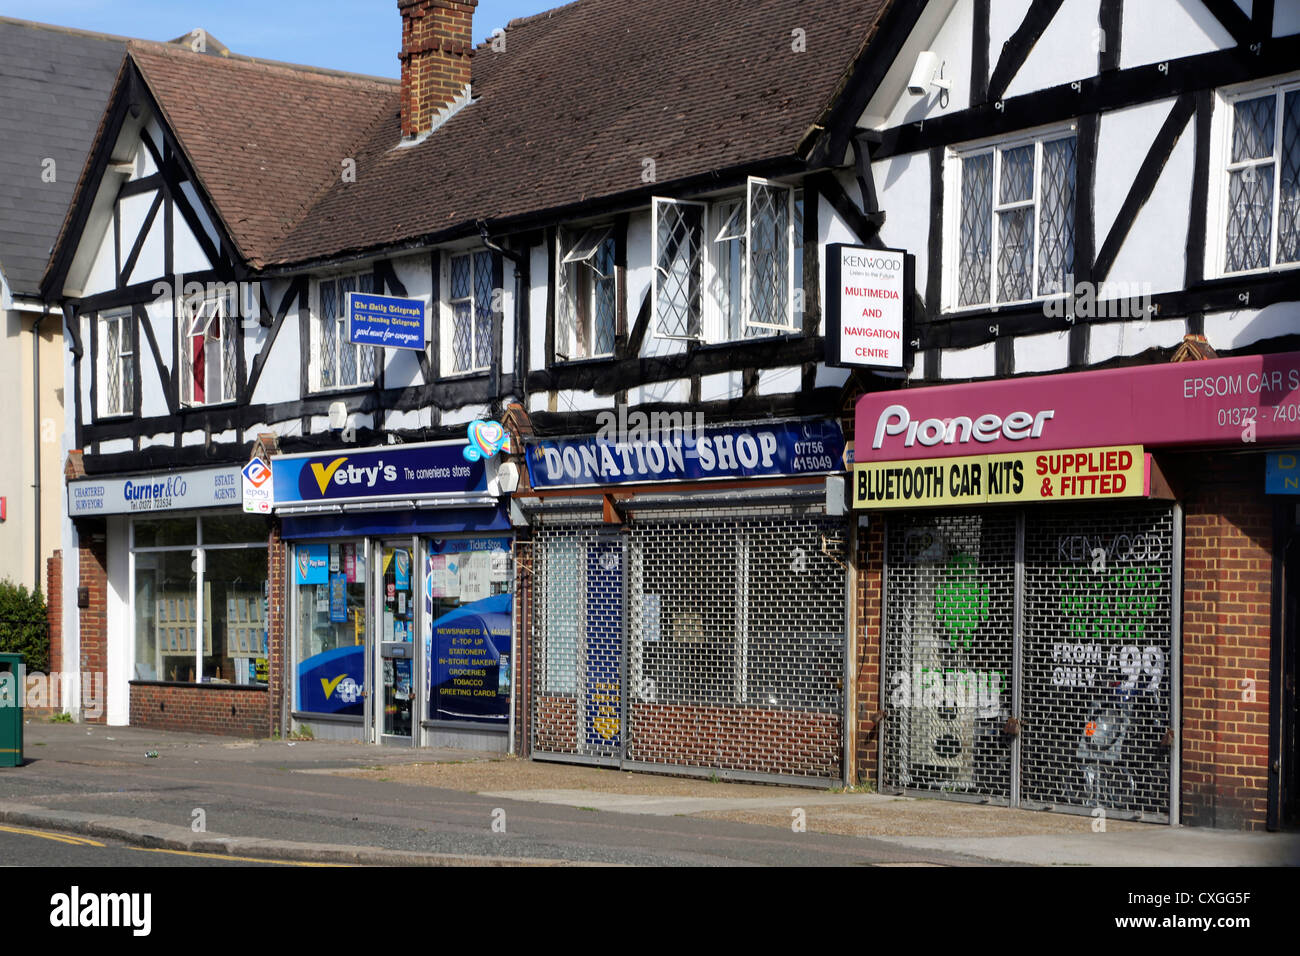 Epsom Surrey in Inghilterra sfilata di Negozi Negozio di donazione e di Pioneer Accessori Auto Shop con persiane in basso Foto Stock